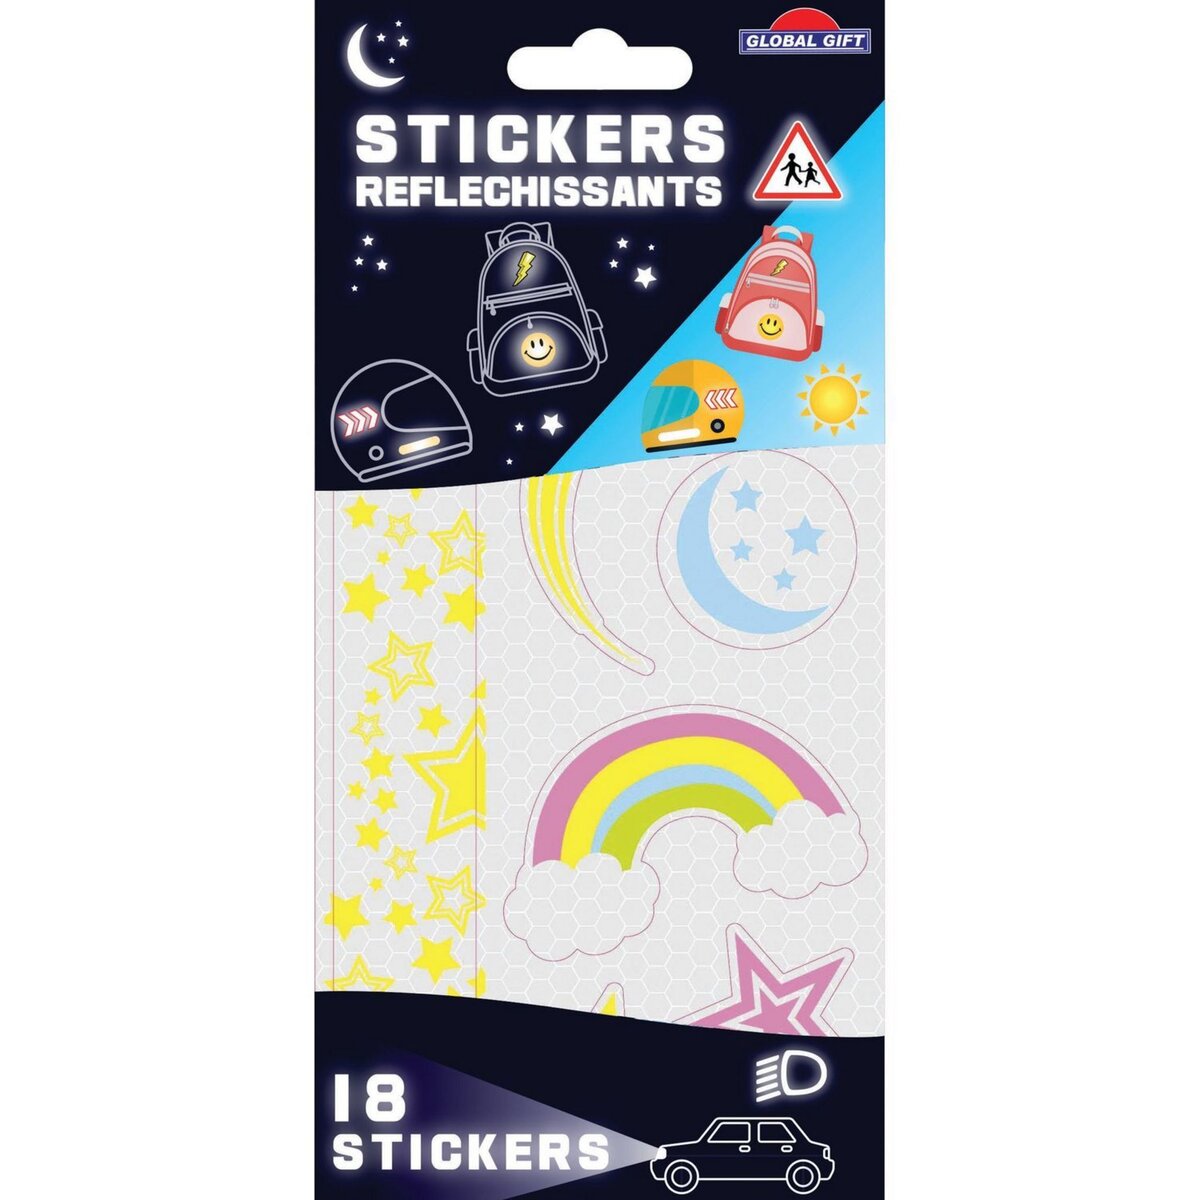  18 stickers rétro-réfléchissants - Étoiles - Résistants et imperméables